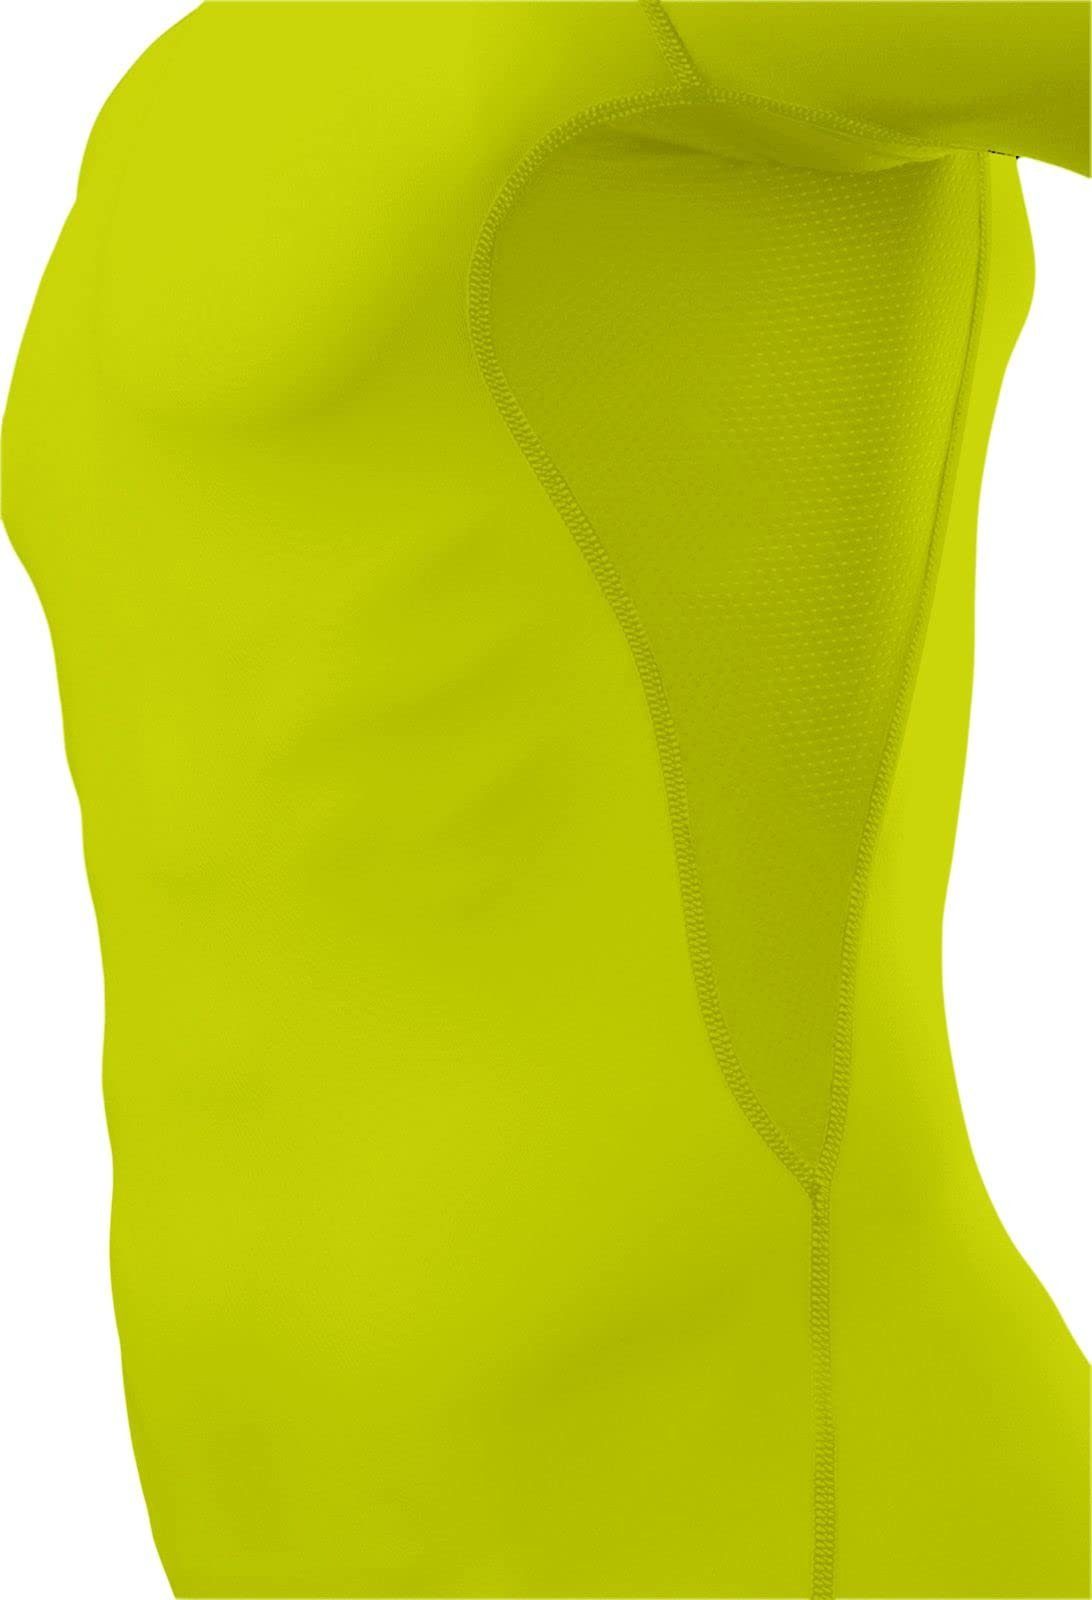 elastisch TCA - Grün HyperFusion TCA Sportshirt, kurzärmlig, Funktionsunterhemd Licht Herren